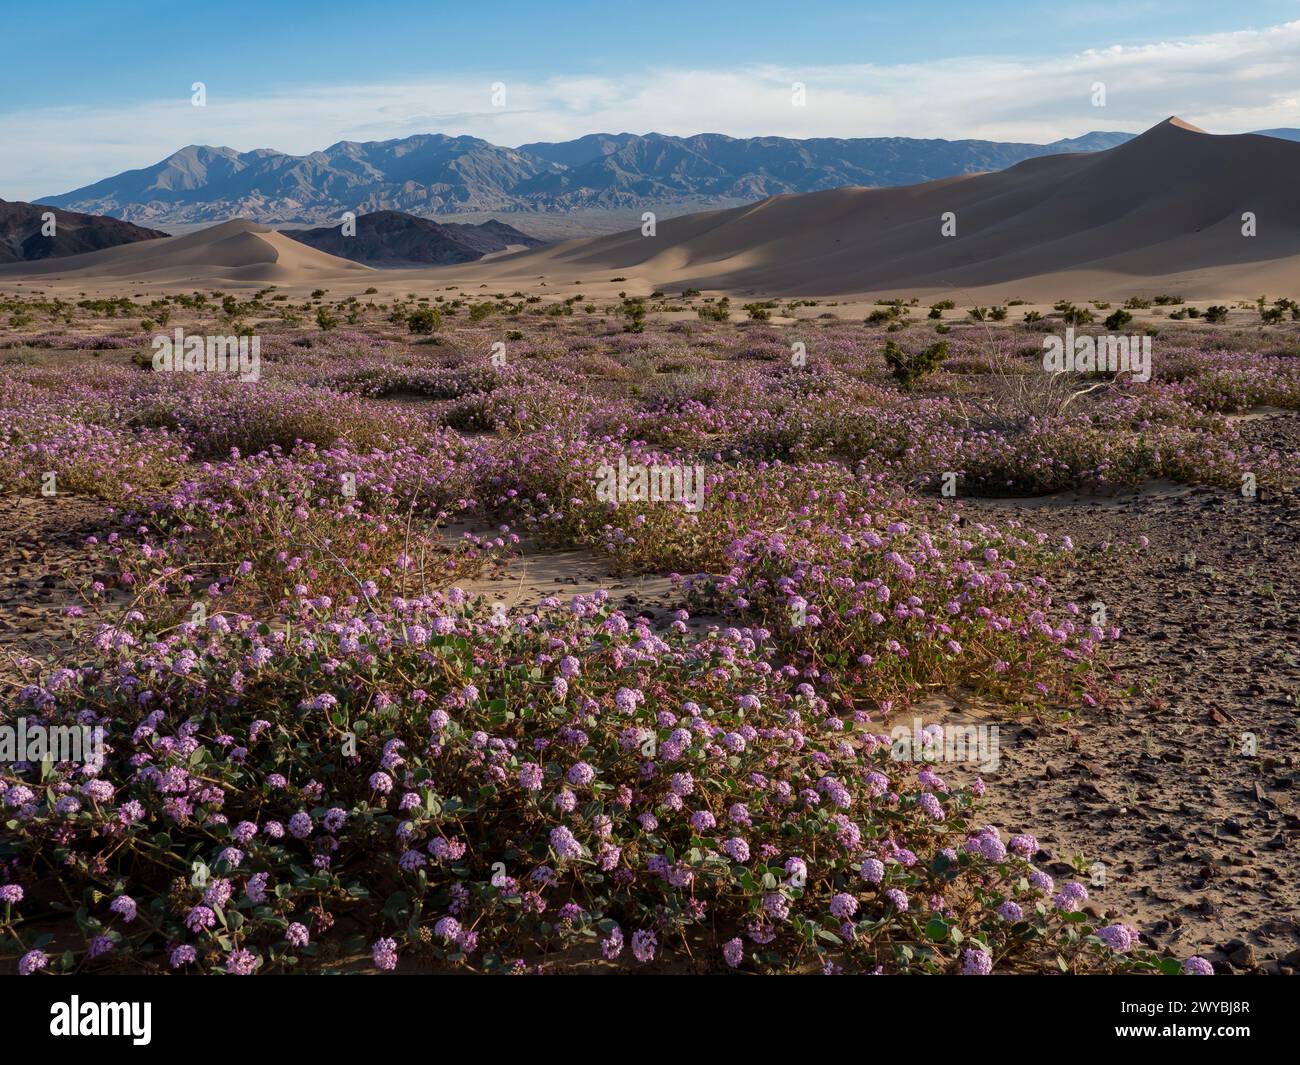 Super floraison de fleurs sauvages dans les spectaculaires dunes de sable Ibex dans le parc national de la Vallée de la mort, Californie, États-Unis Banque D'Images